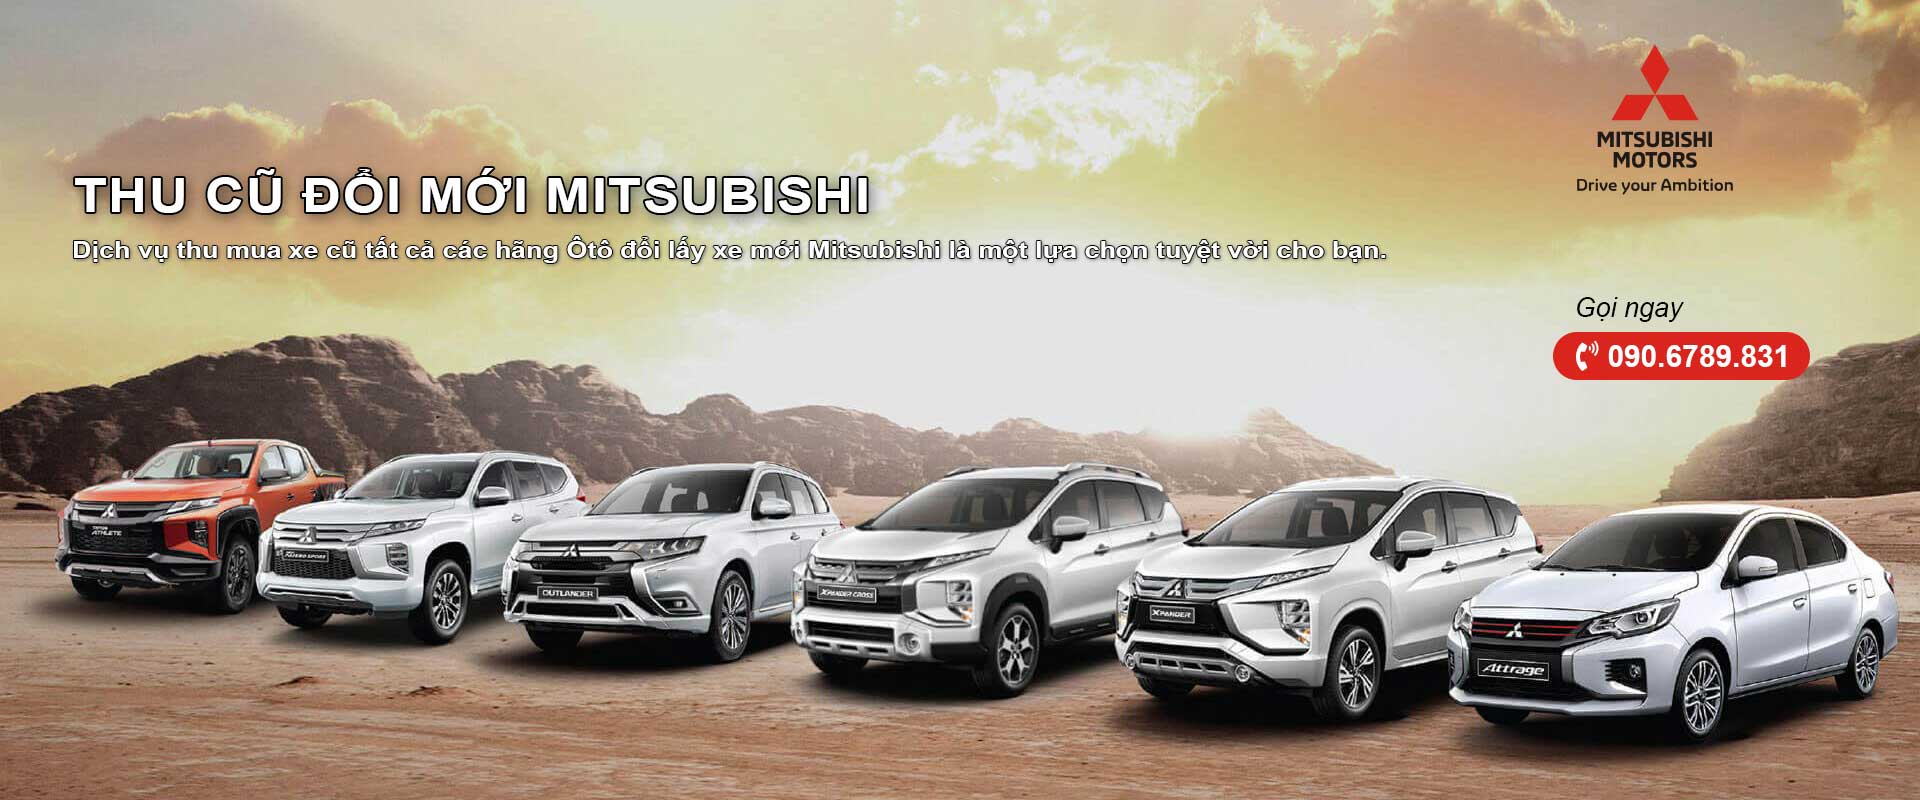 Thu cũ đổi mới Mitsubishi